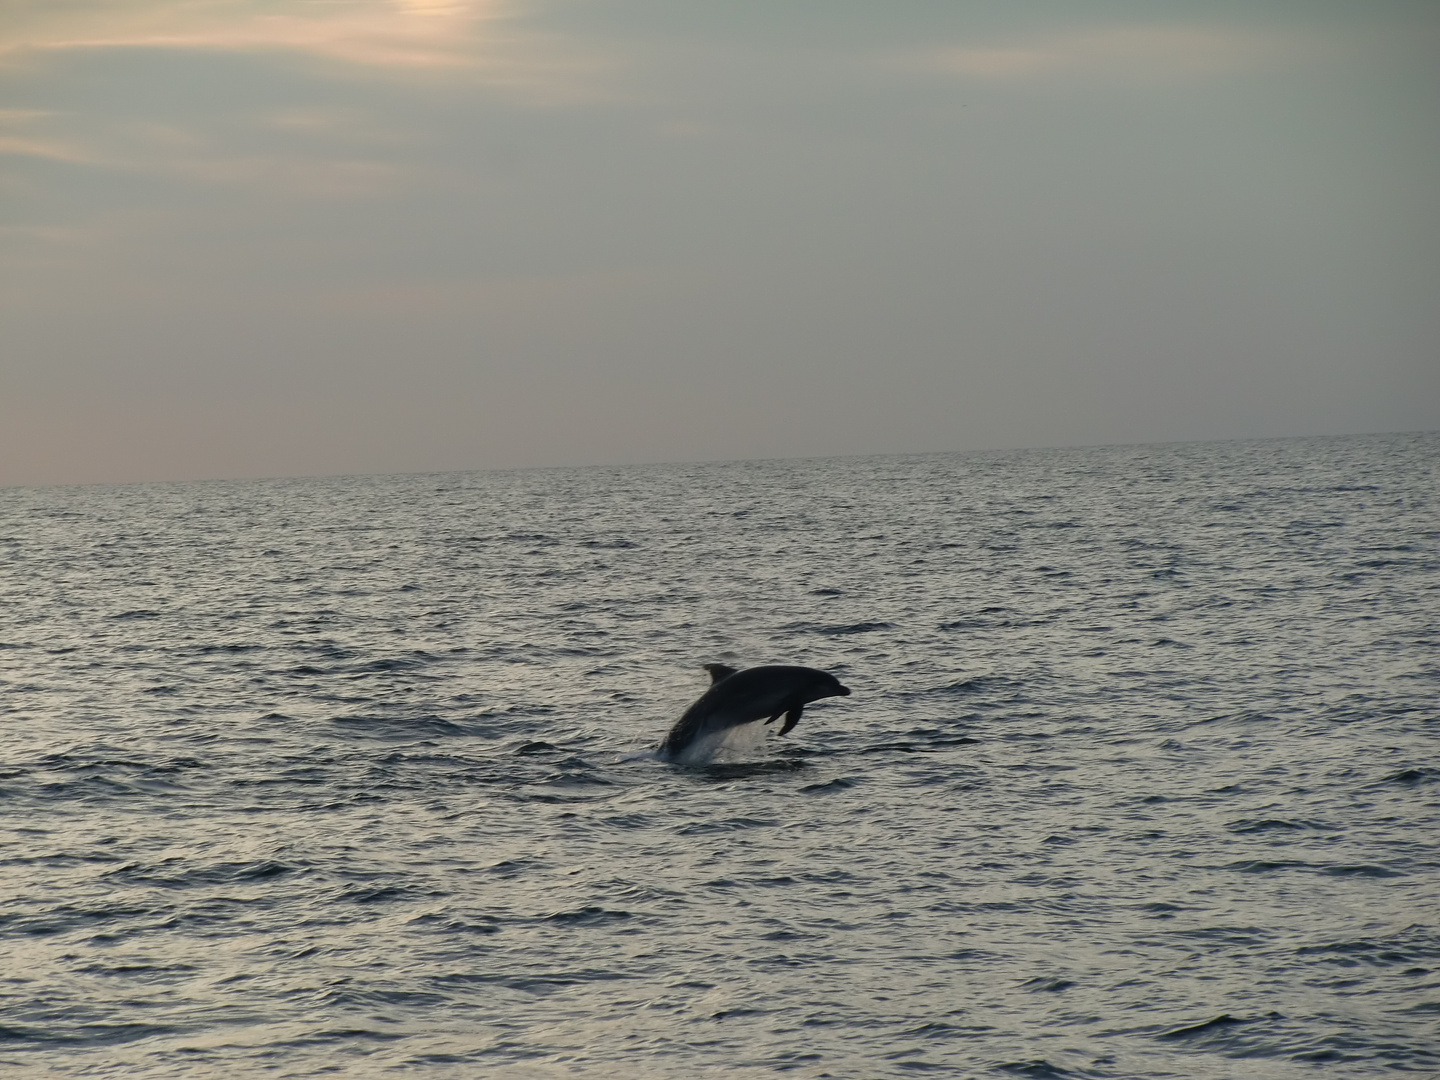 Delphin - dolphin